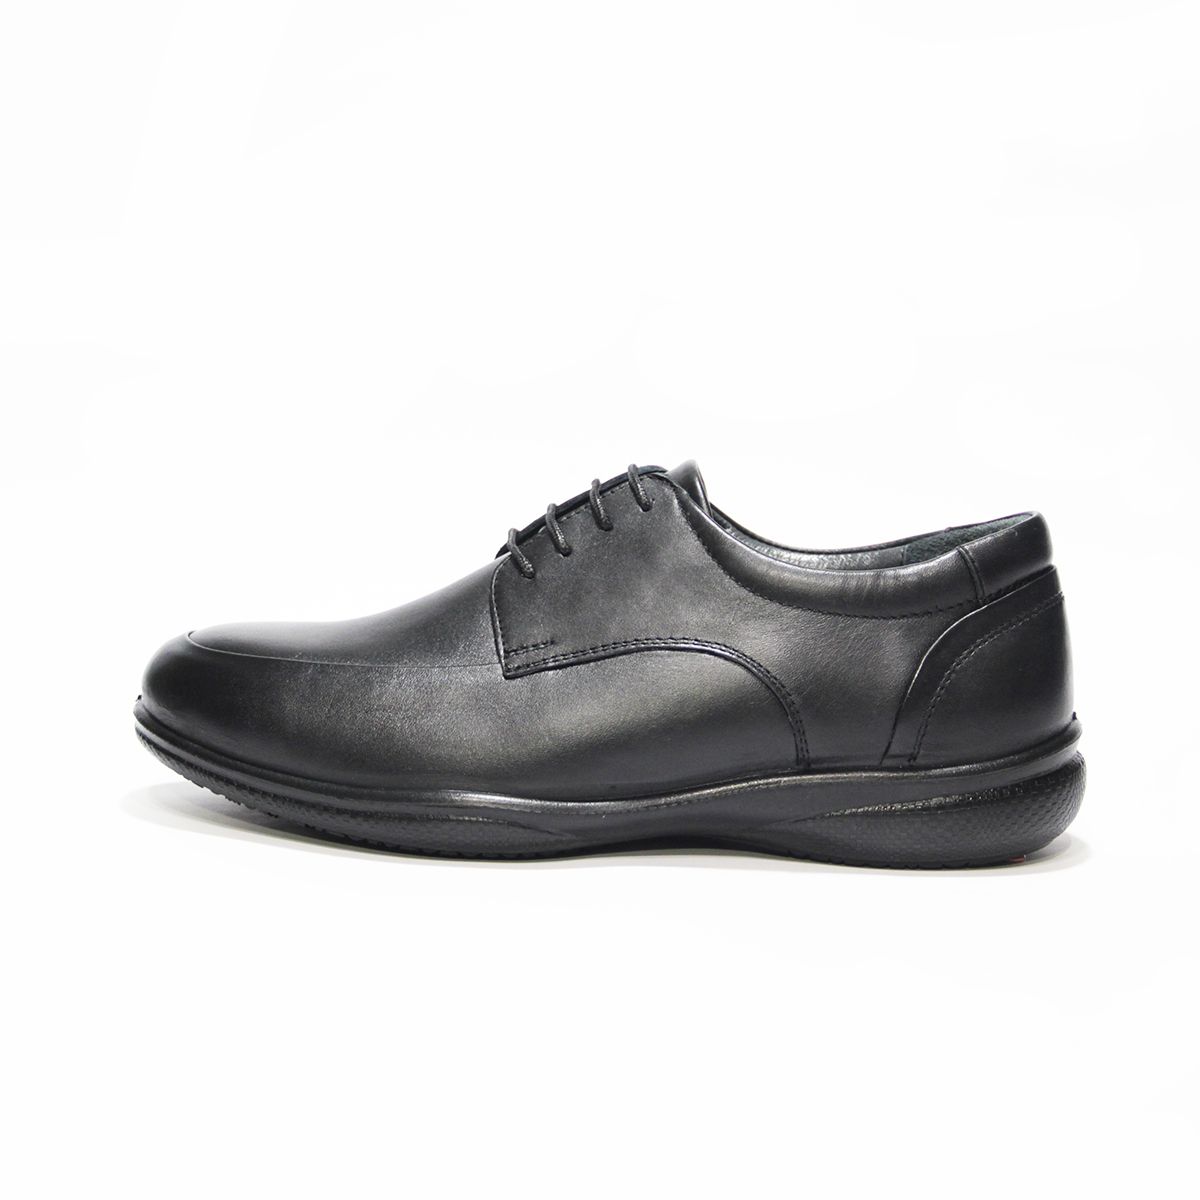 کفش روزمره مردانه فرزین کد TBM 022 رنگ مشکی -  - 1